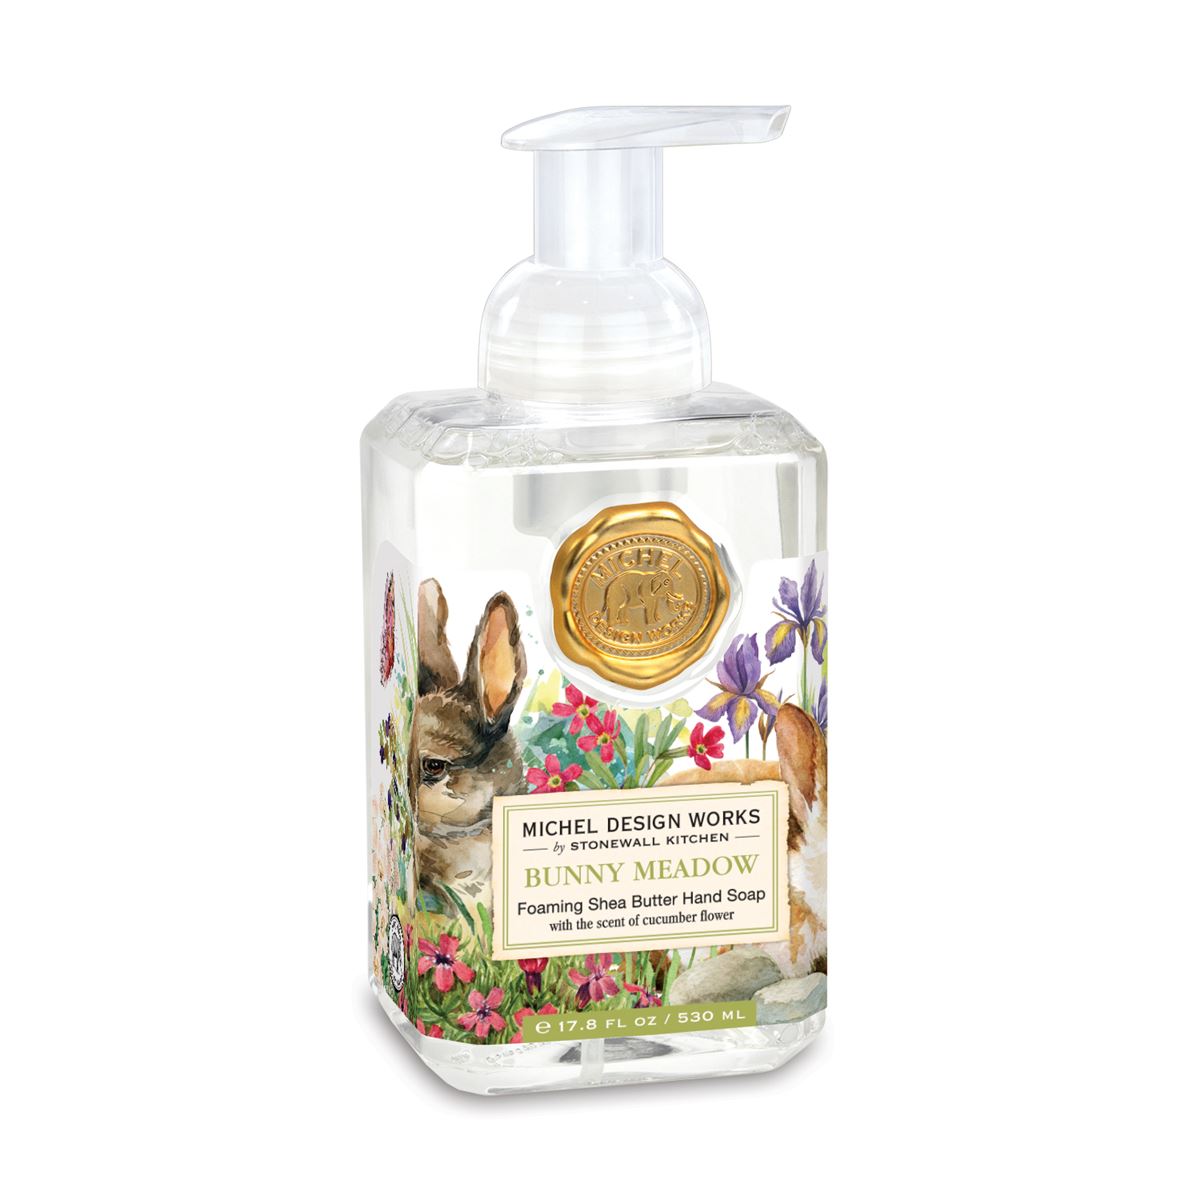 Hand Soap “Bunny Meadow” Foaming